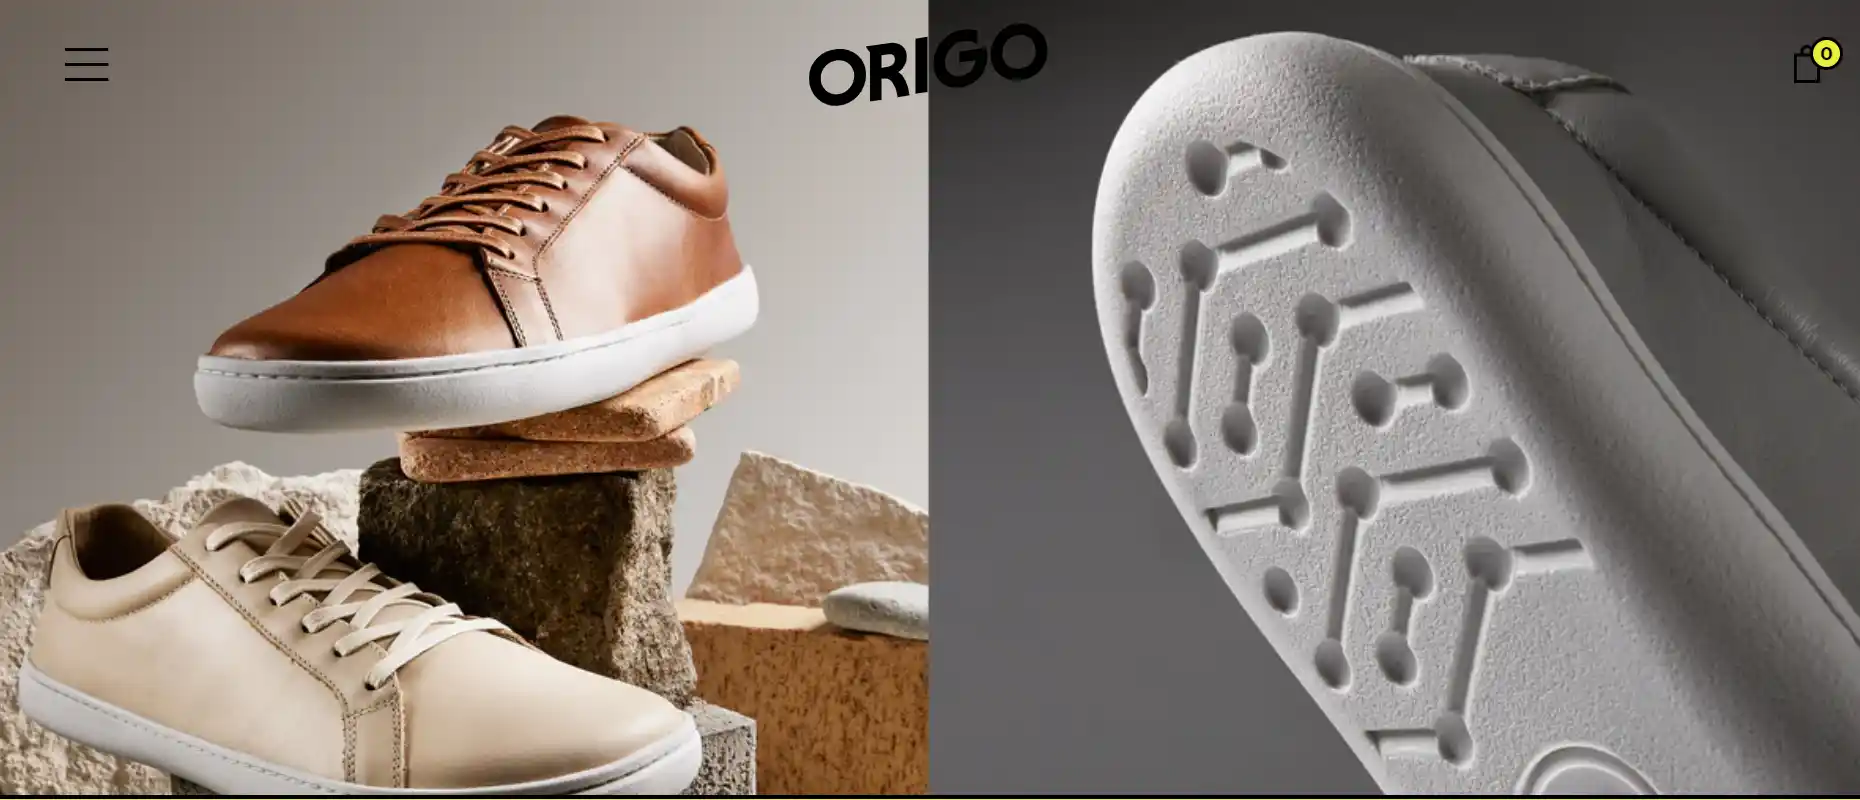 Origo Shoes Review - Should You Try This?